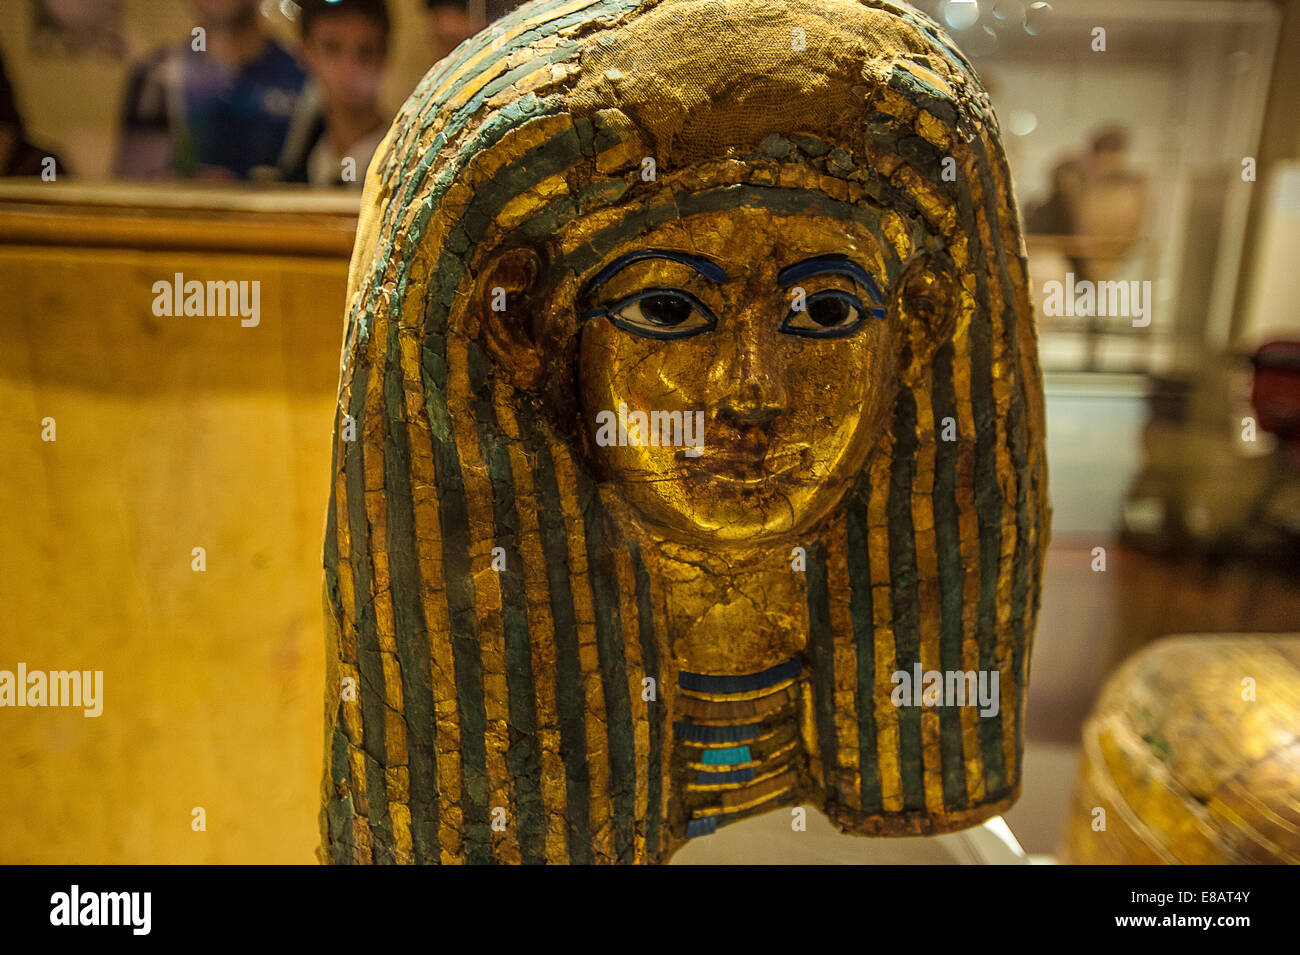 Museo Egipcio de Turín Piamonte Italia Tumba de Kha, merecen la máscara funeraria. Foto de stock